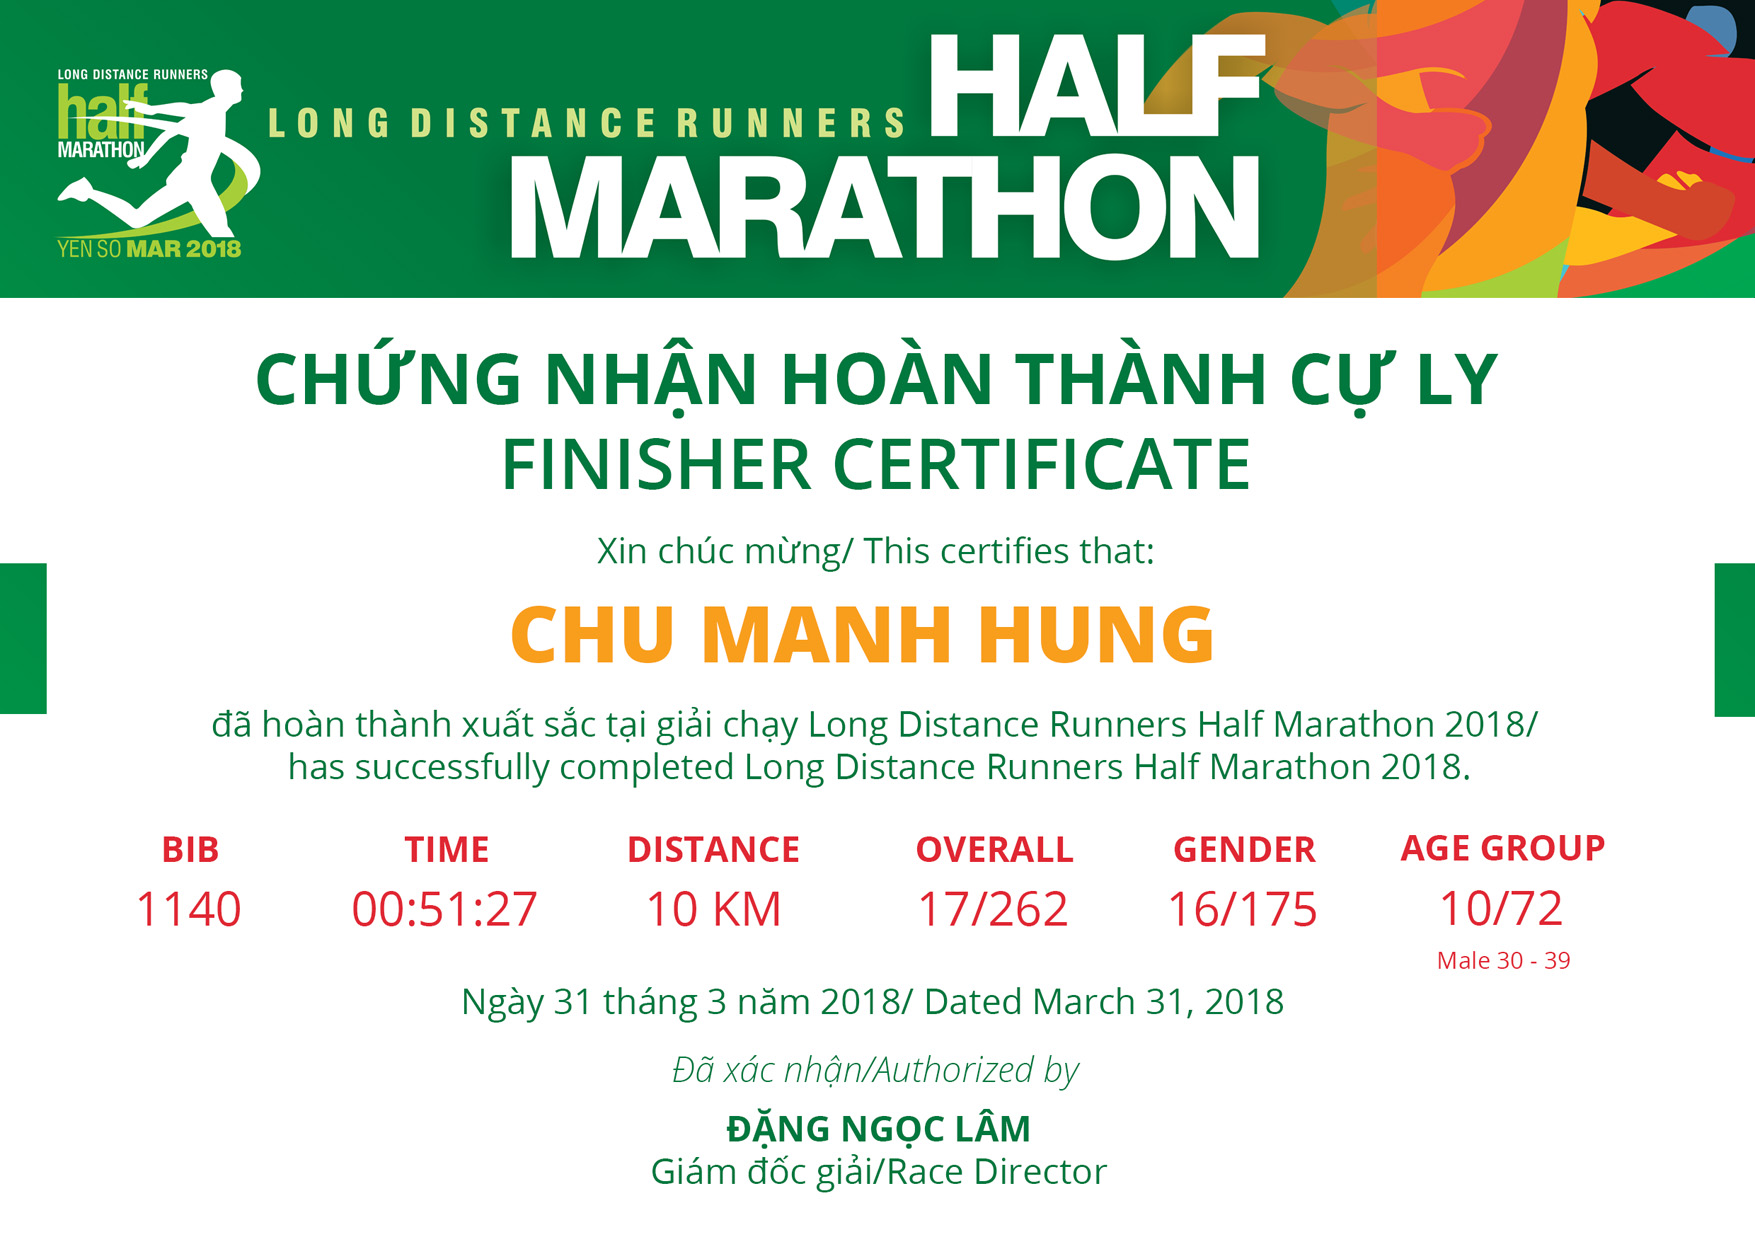 1140 - Chu Manh Hung